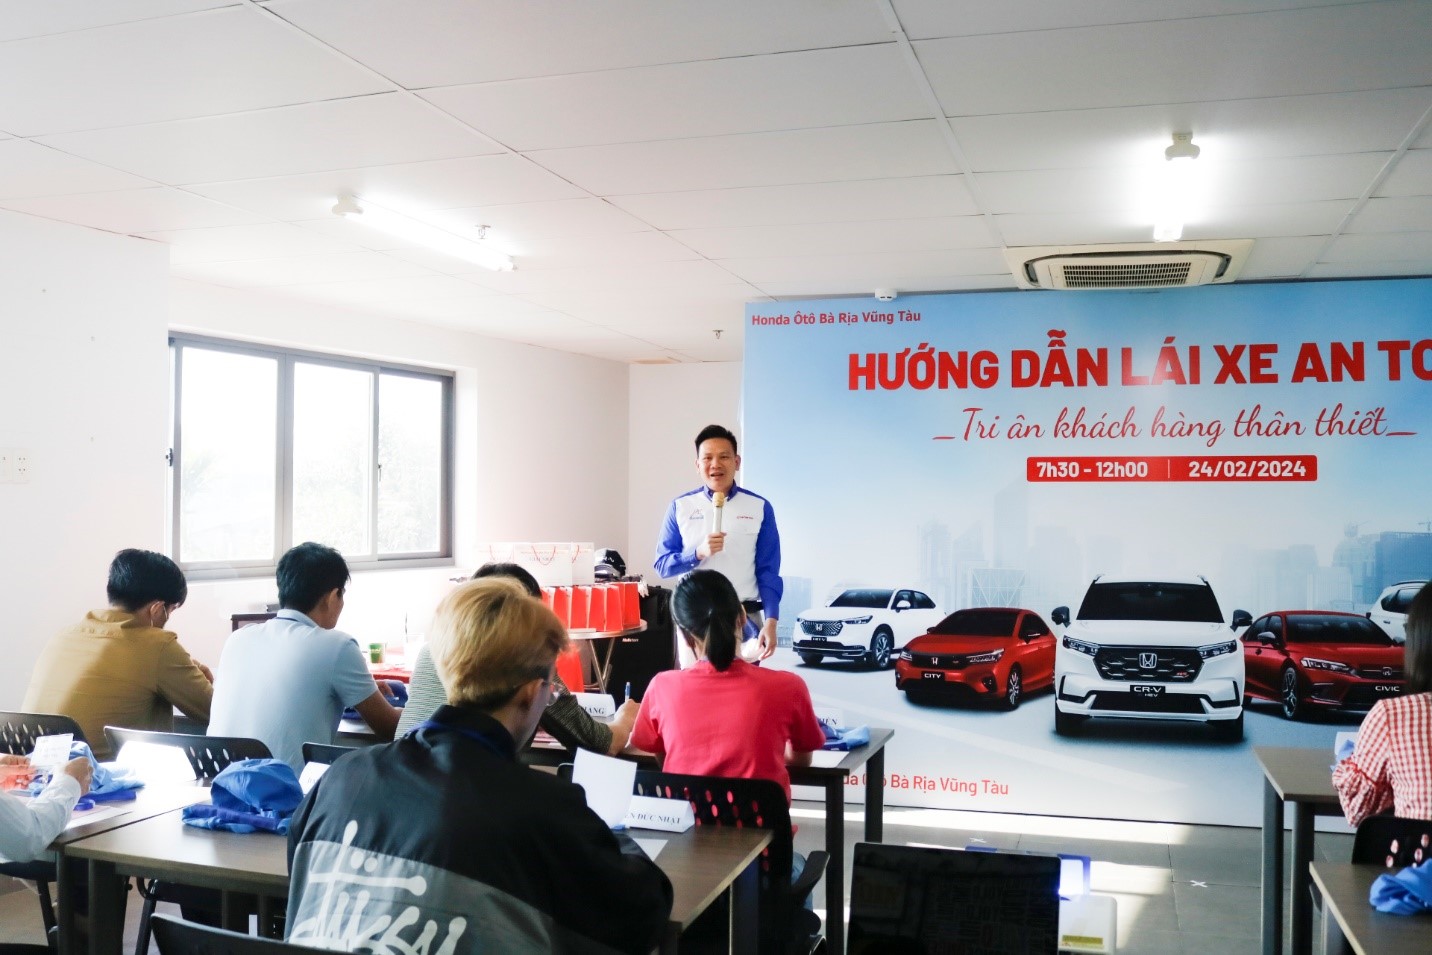 Đại diện Honda Ôtô Bà Rịa Vũng Tàu hướng dẫn các kỹ năng lái xe an toàn cho học viên.